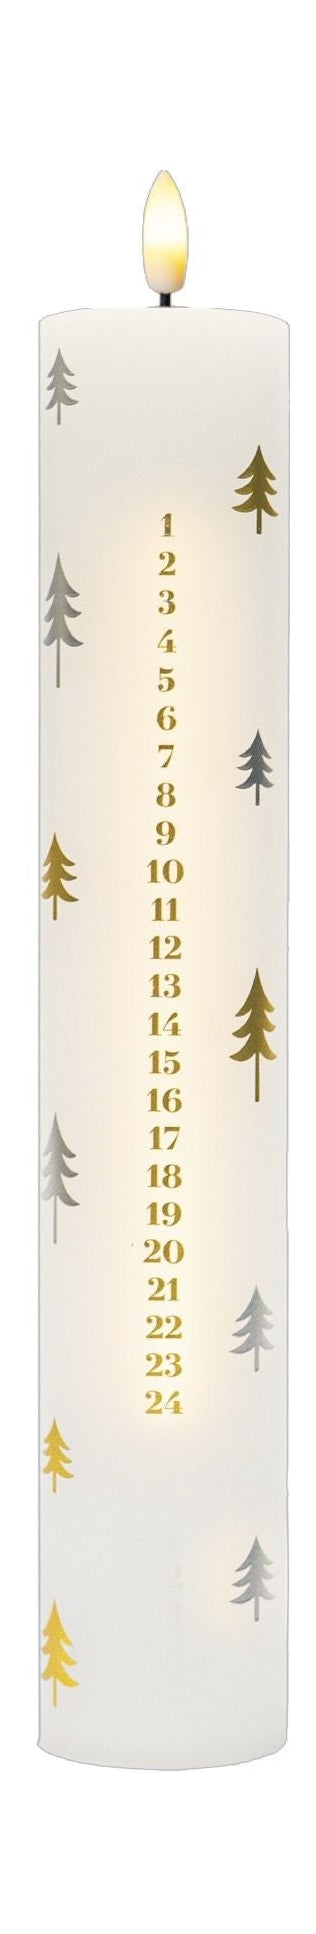 Sirius Sille Calendar Candle ø5x H29,8cm, White/Gold/Silver